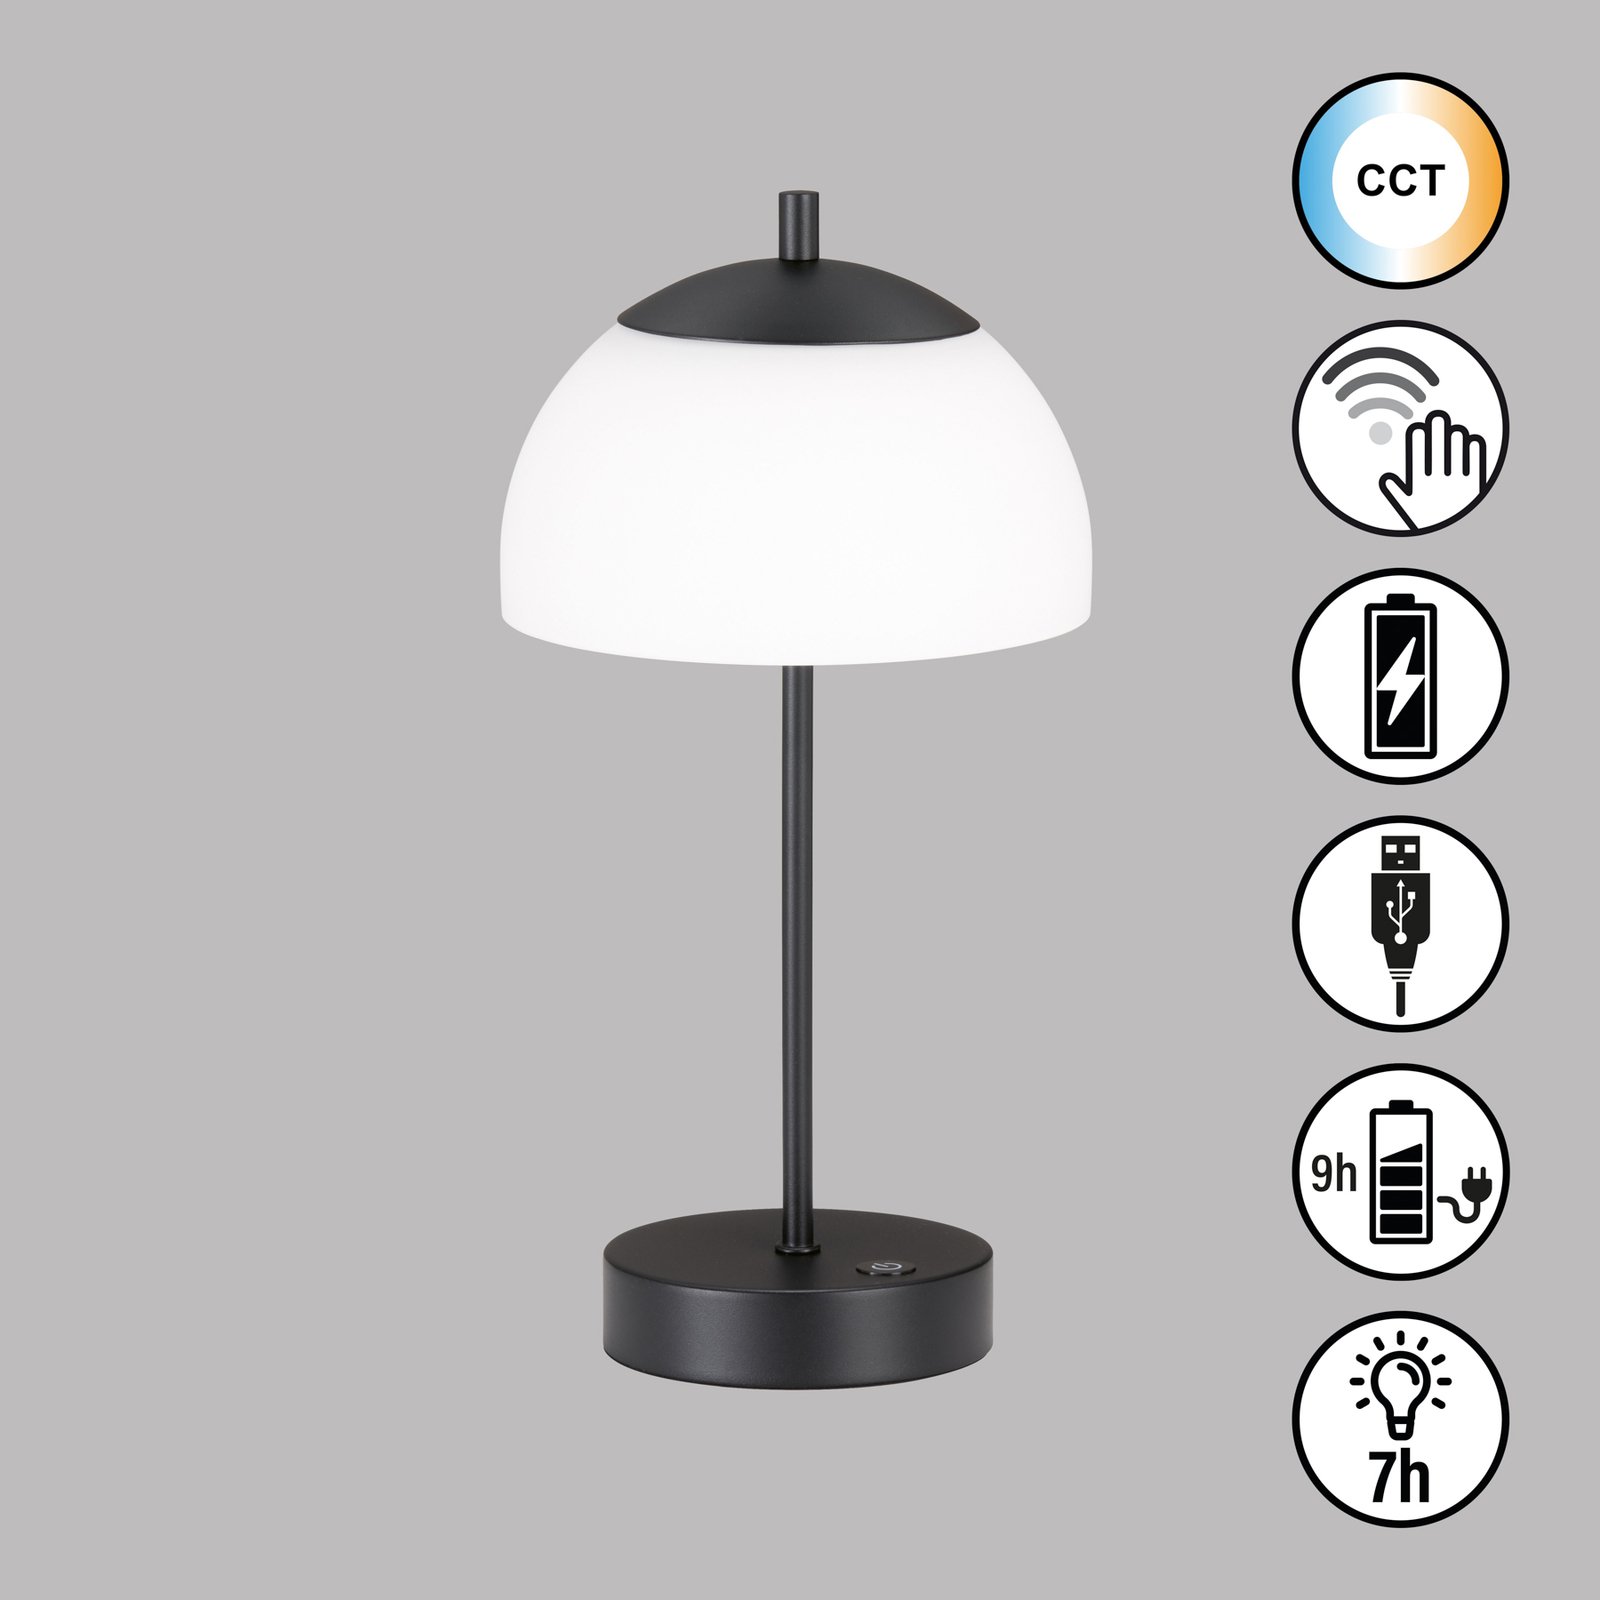 Lampada da tavolo LED Riva, nera, CCT, dimmerabile, altezza 35cm